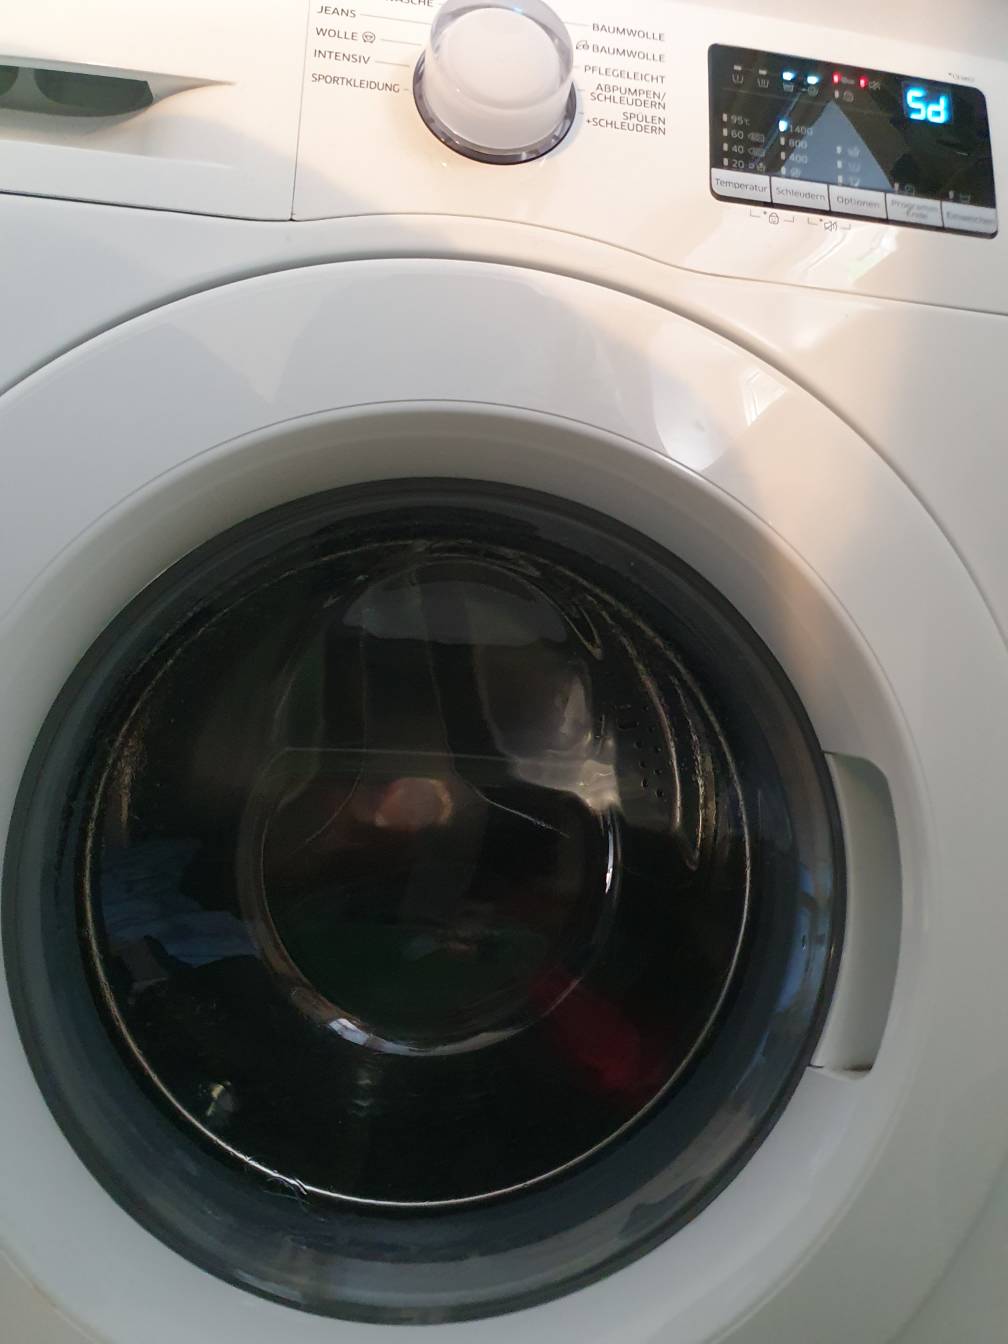 Waschmaschine Fehler 5d (zu viel Schaum) - Samsung Community